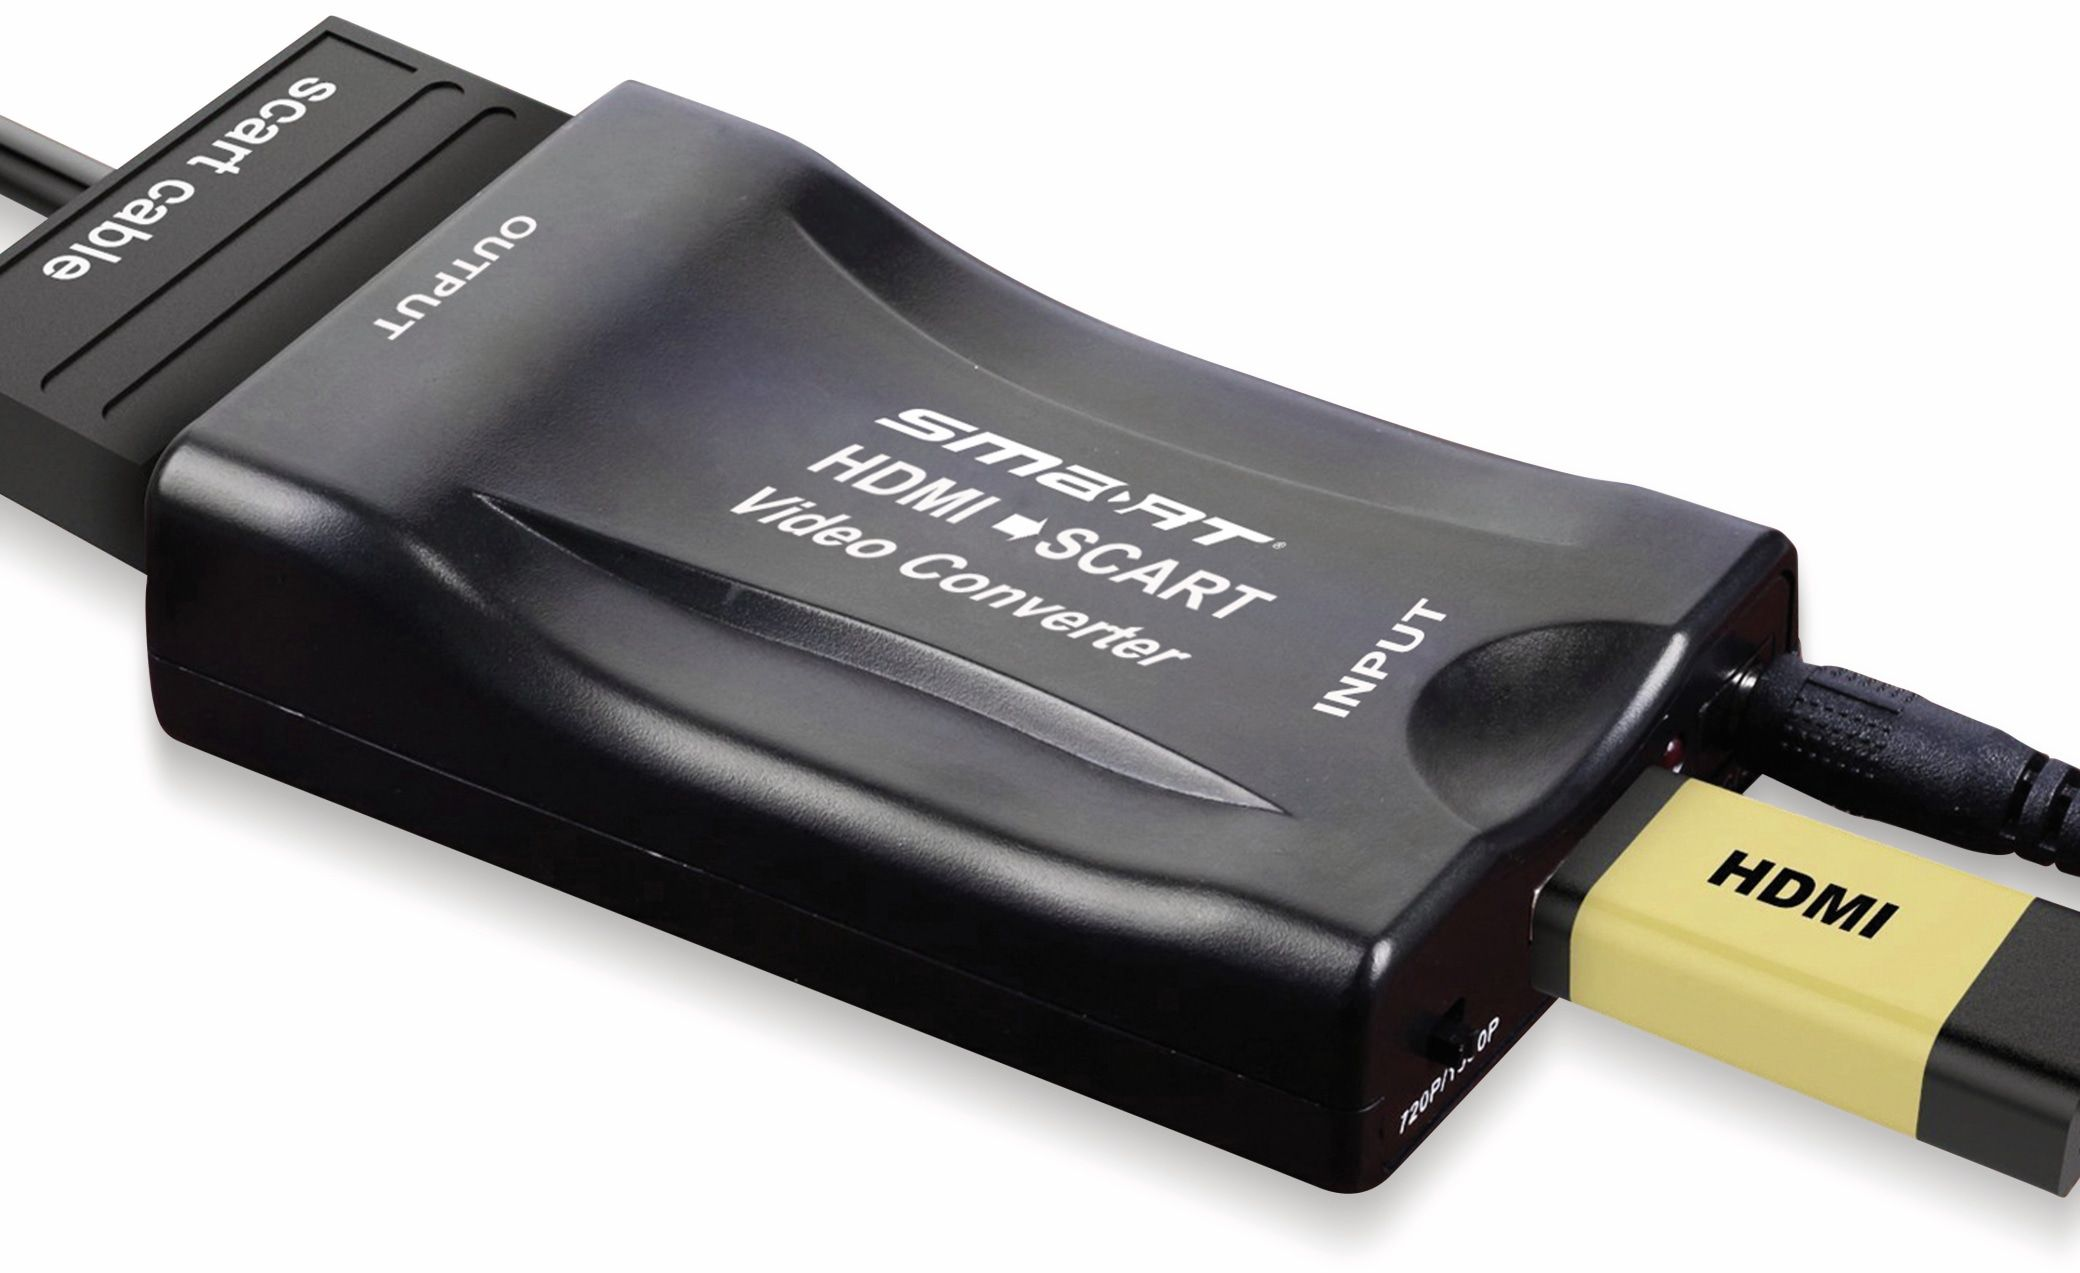 SMART HDMI-Konverter HDMI2Scart, cm zu HDMI Scart 15,0 Konverter